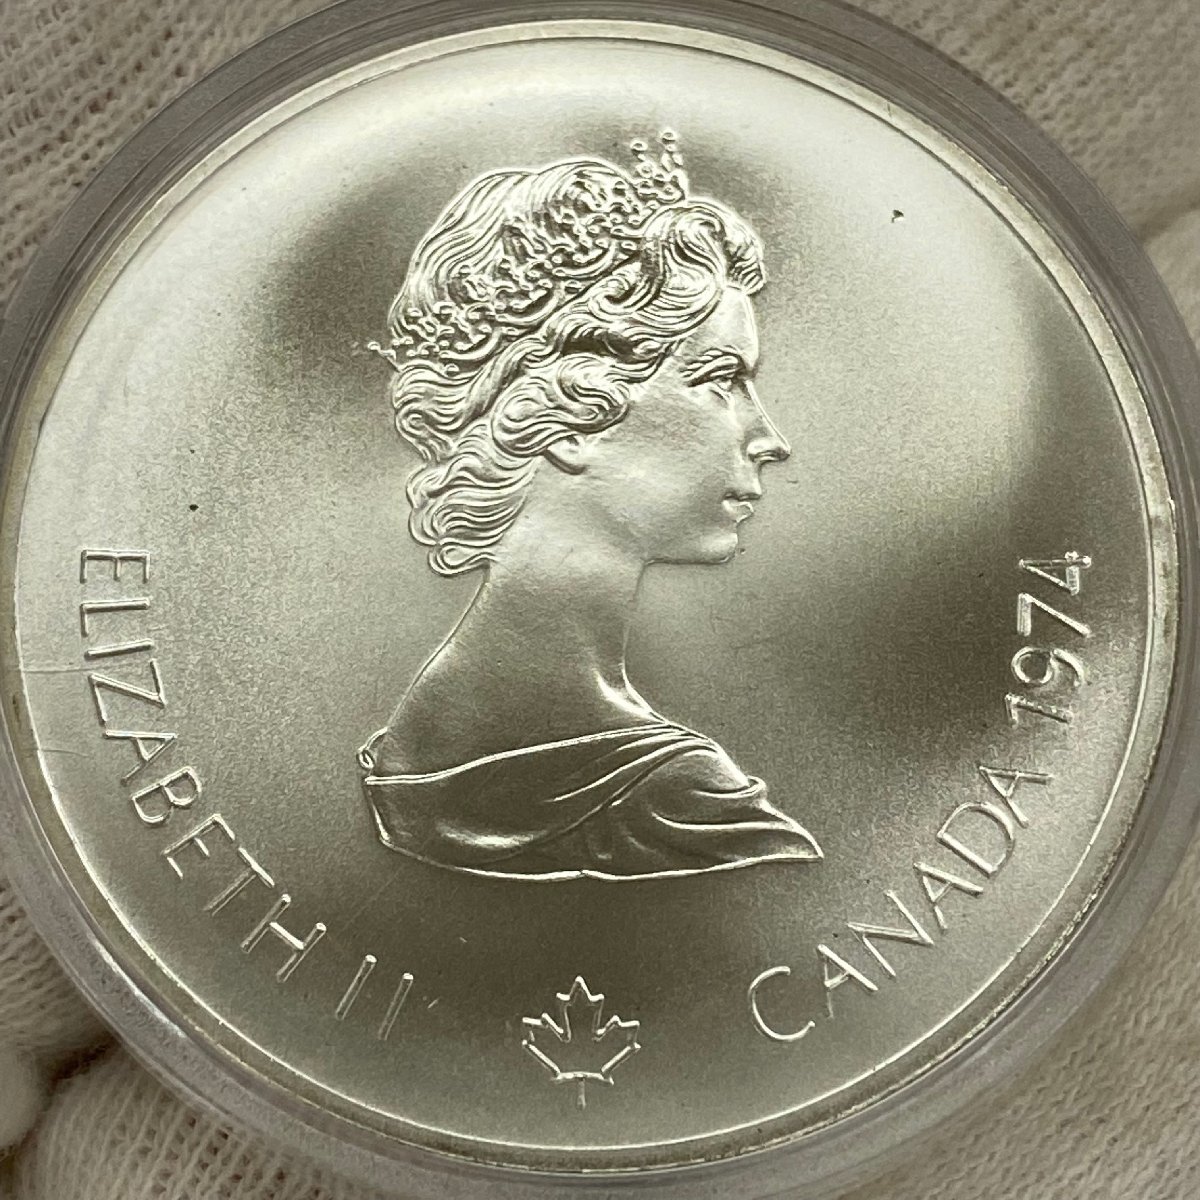 ◇記念コイン◇1976年 カナダ モントリオール オリンピック 10ドル 5